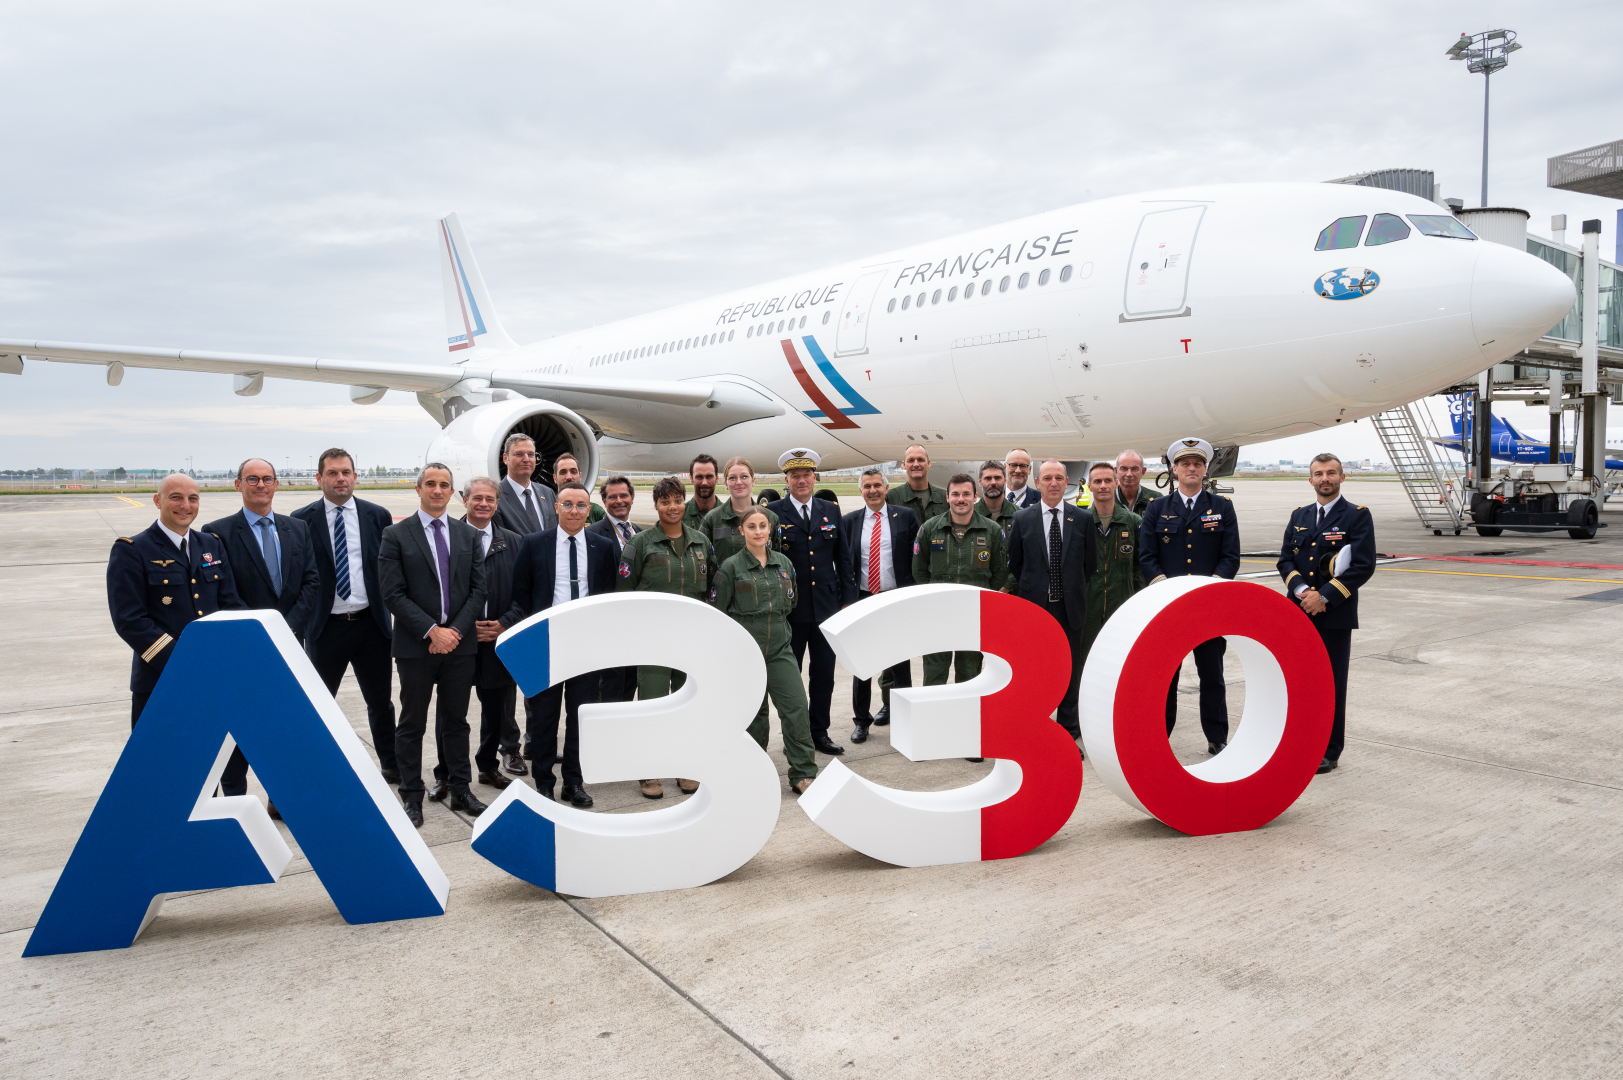 Le comité d'honneur pose devant un signe "A330" devant l'aéronef A330, sur le tarmac